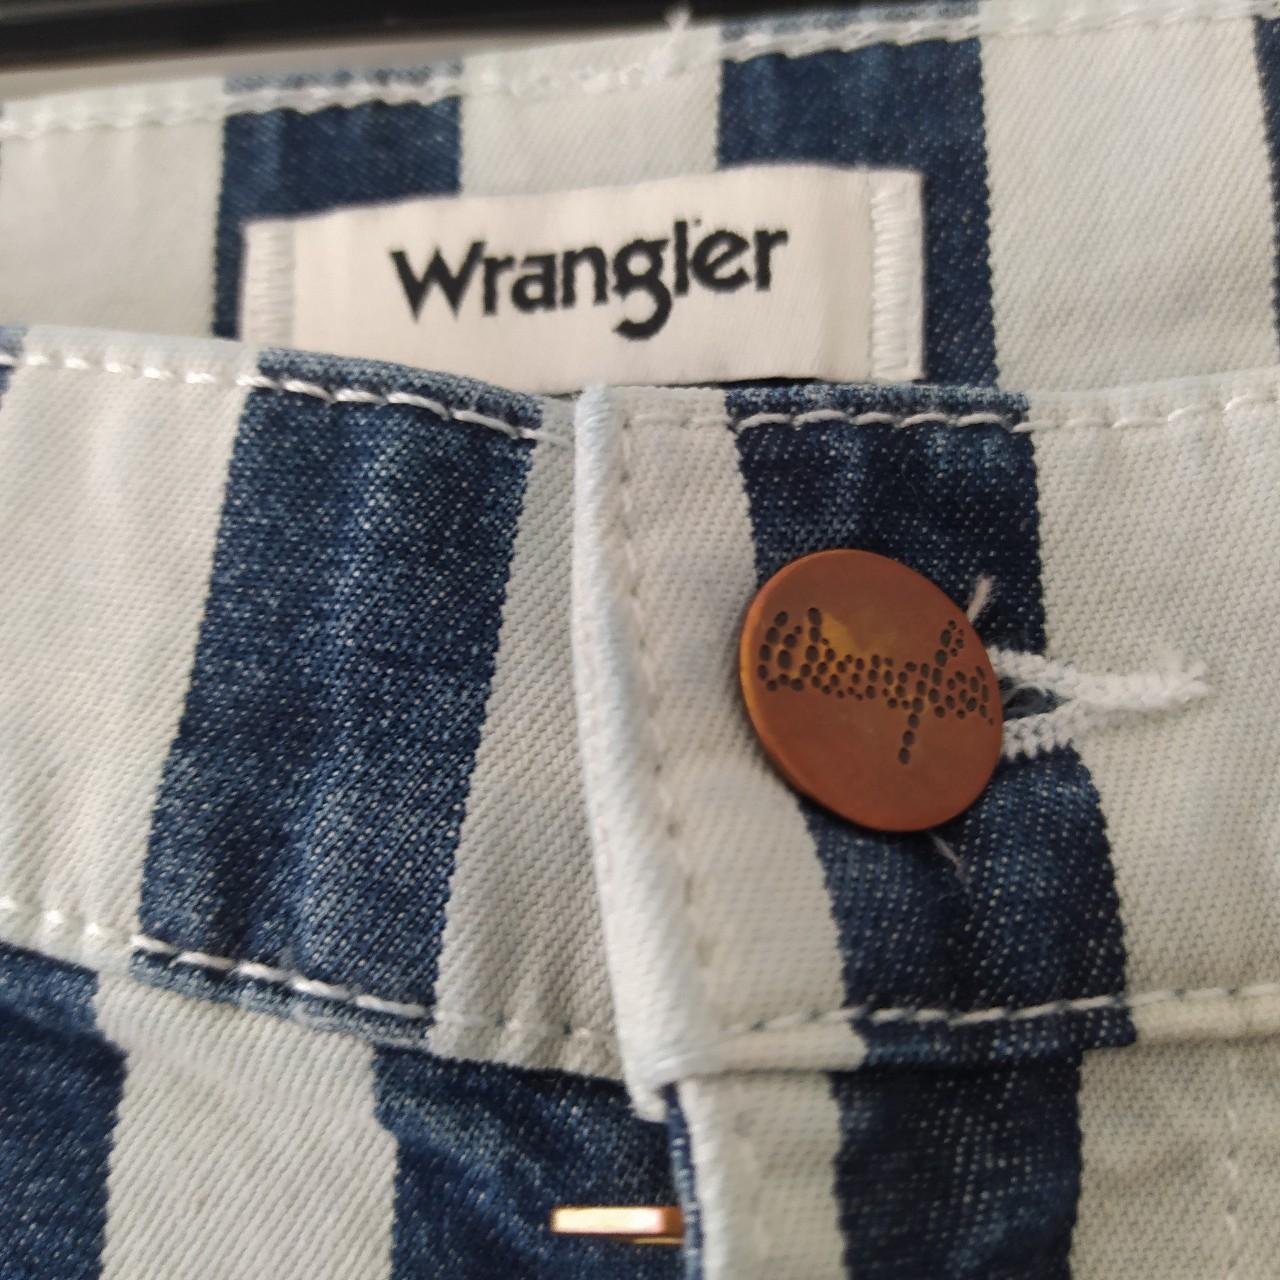 Wrangler 622 High Rise Flare Wanderer Stripe Jeans,... - Depop